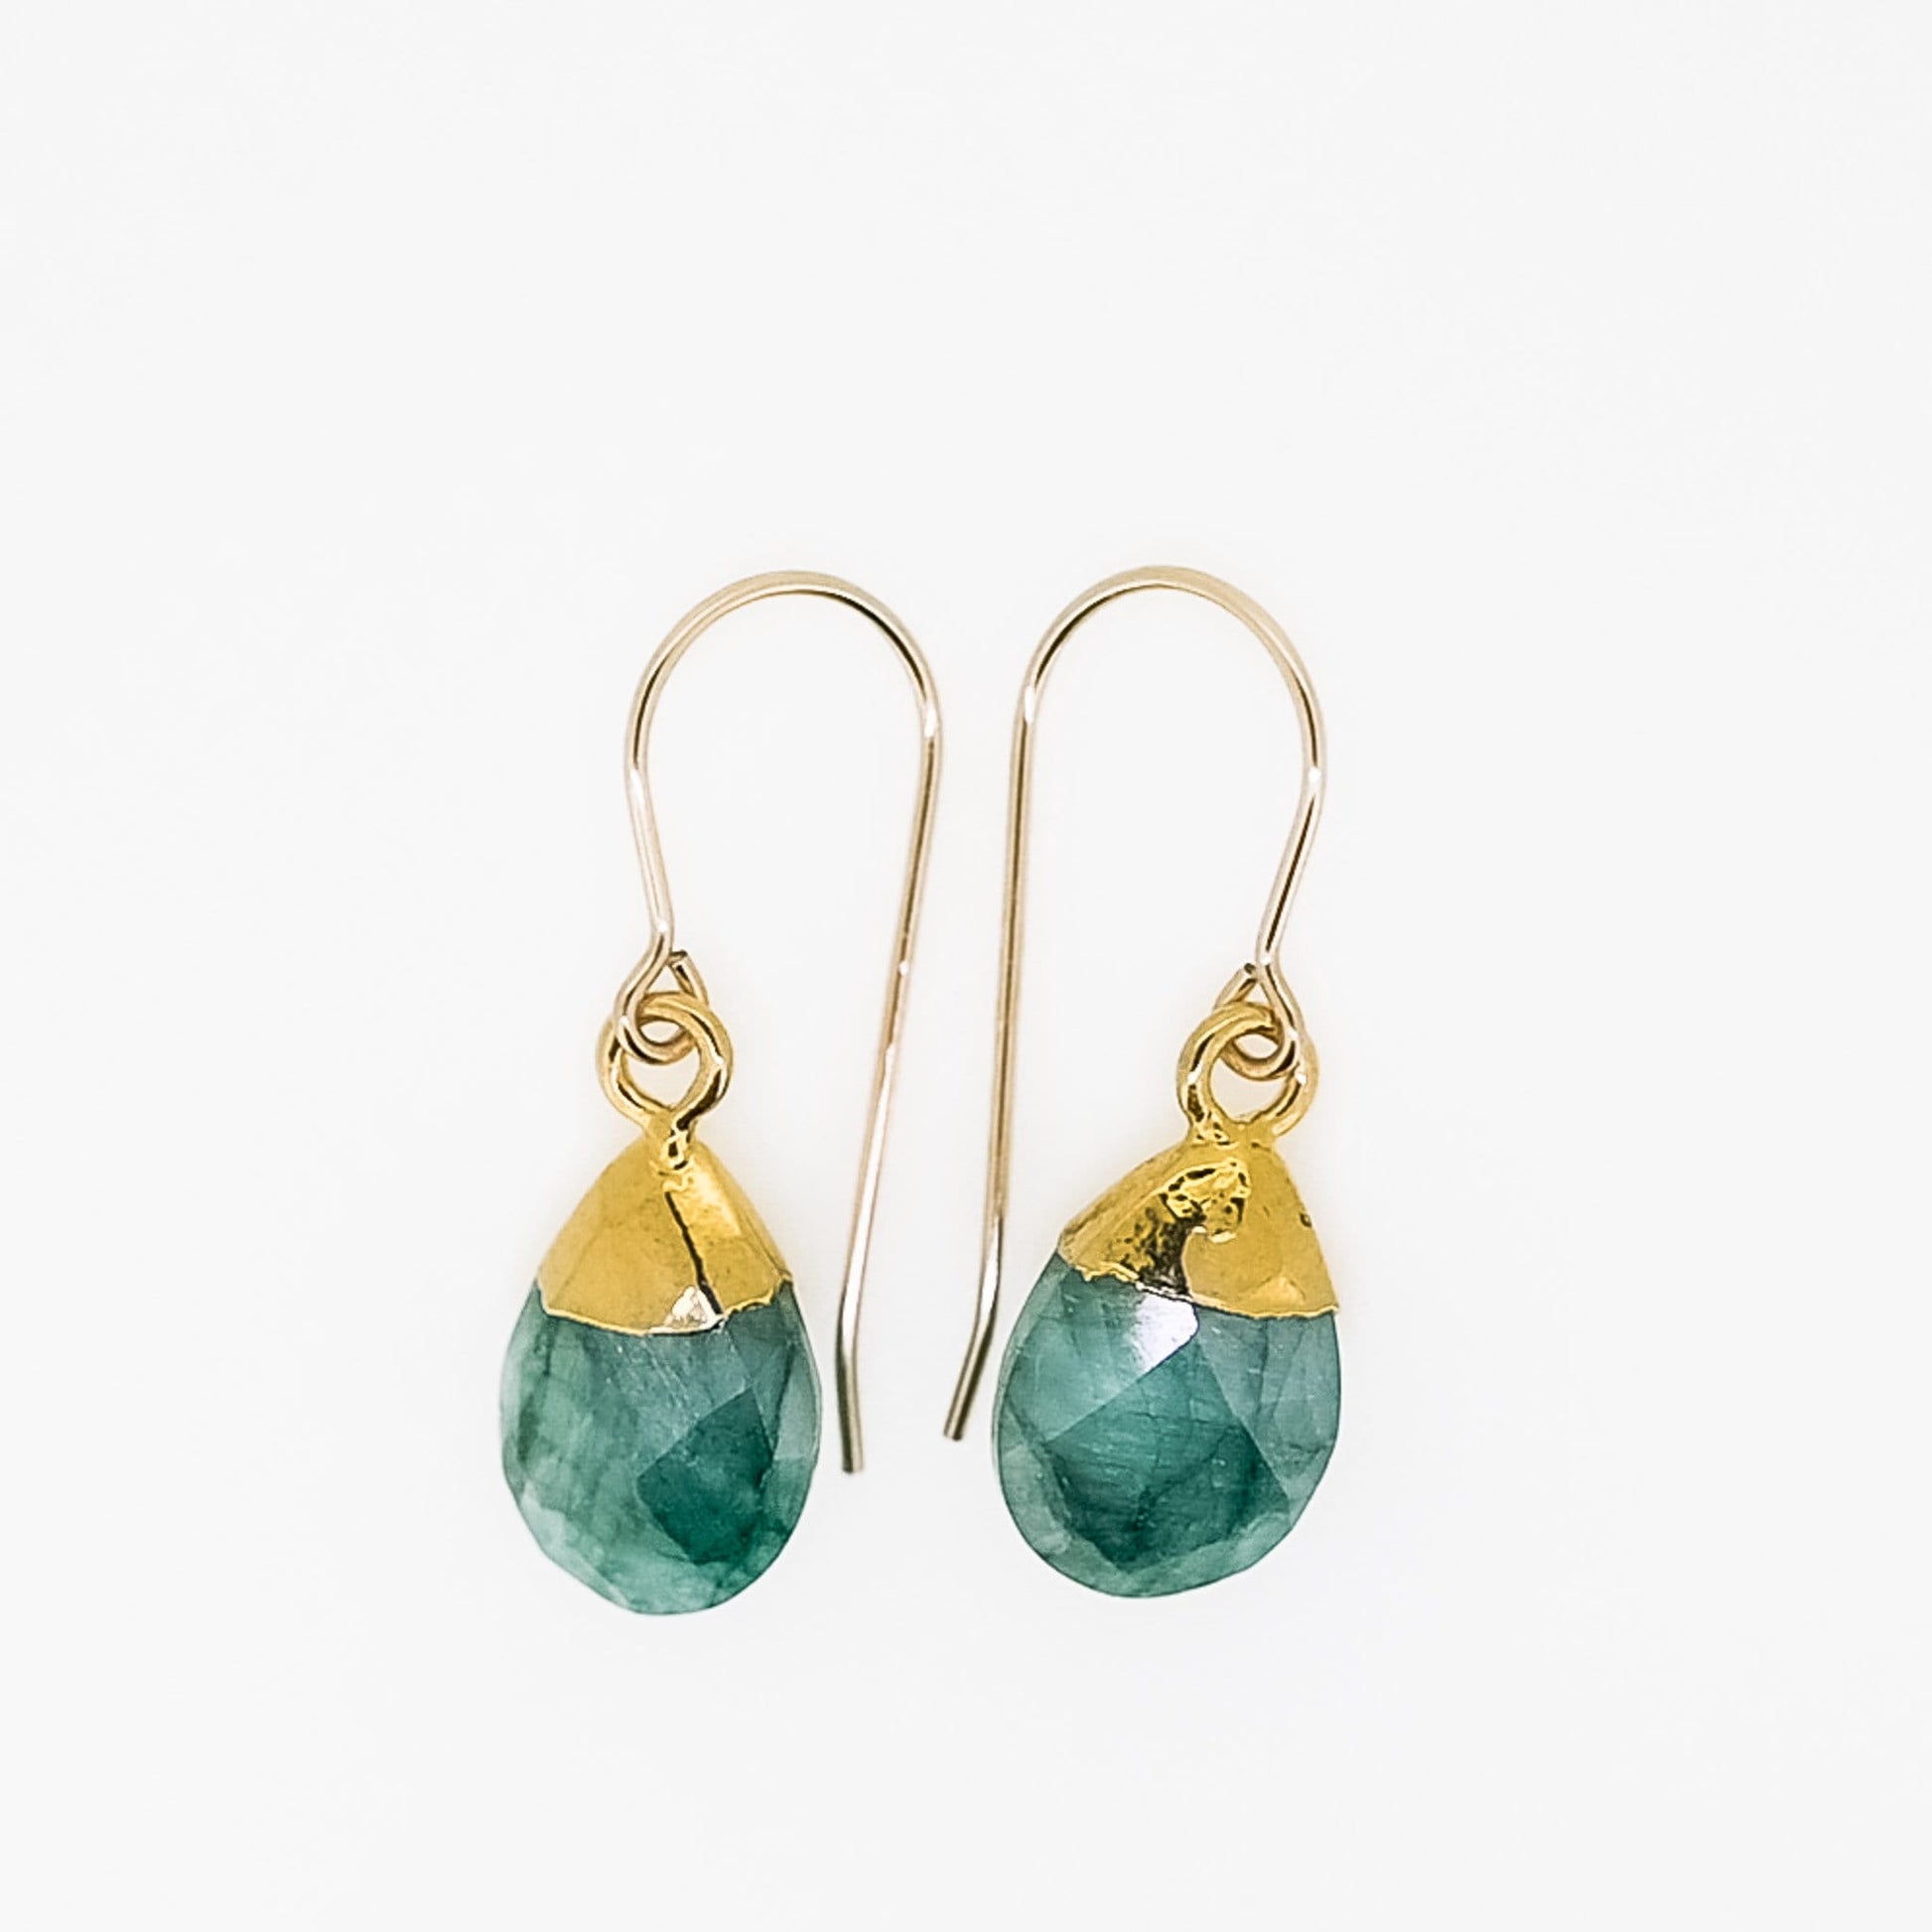 Emerald Tear Drop Earrings in Silver or Gold